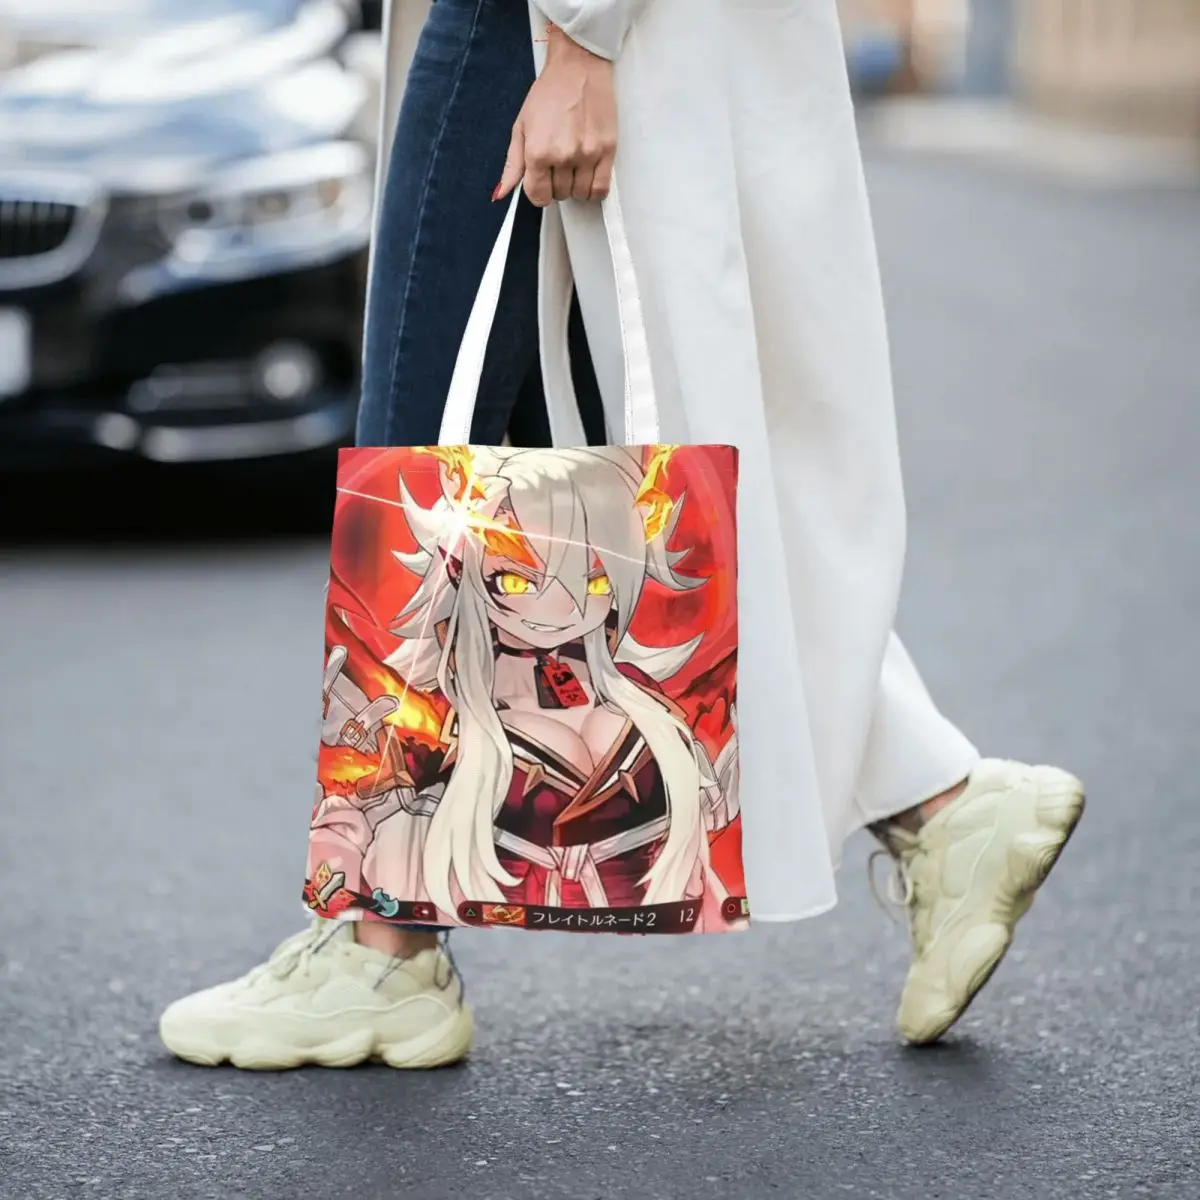 MAGLAM LORD Totes Canvas Handbag Women Canvas Shopping Bag